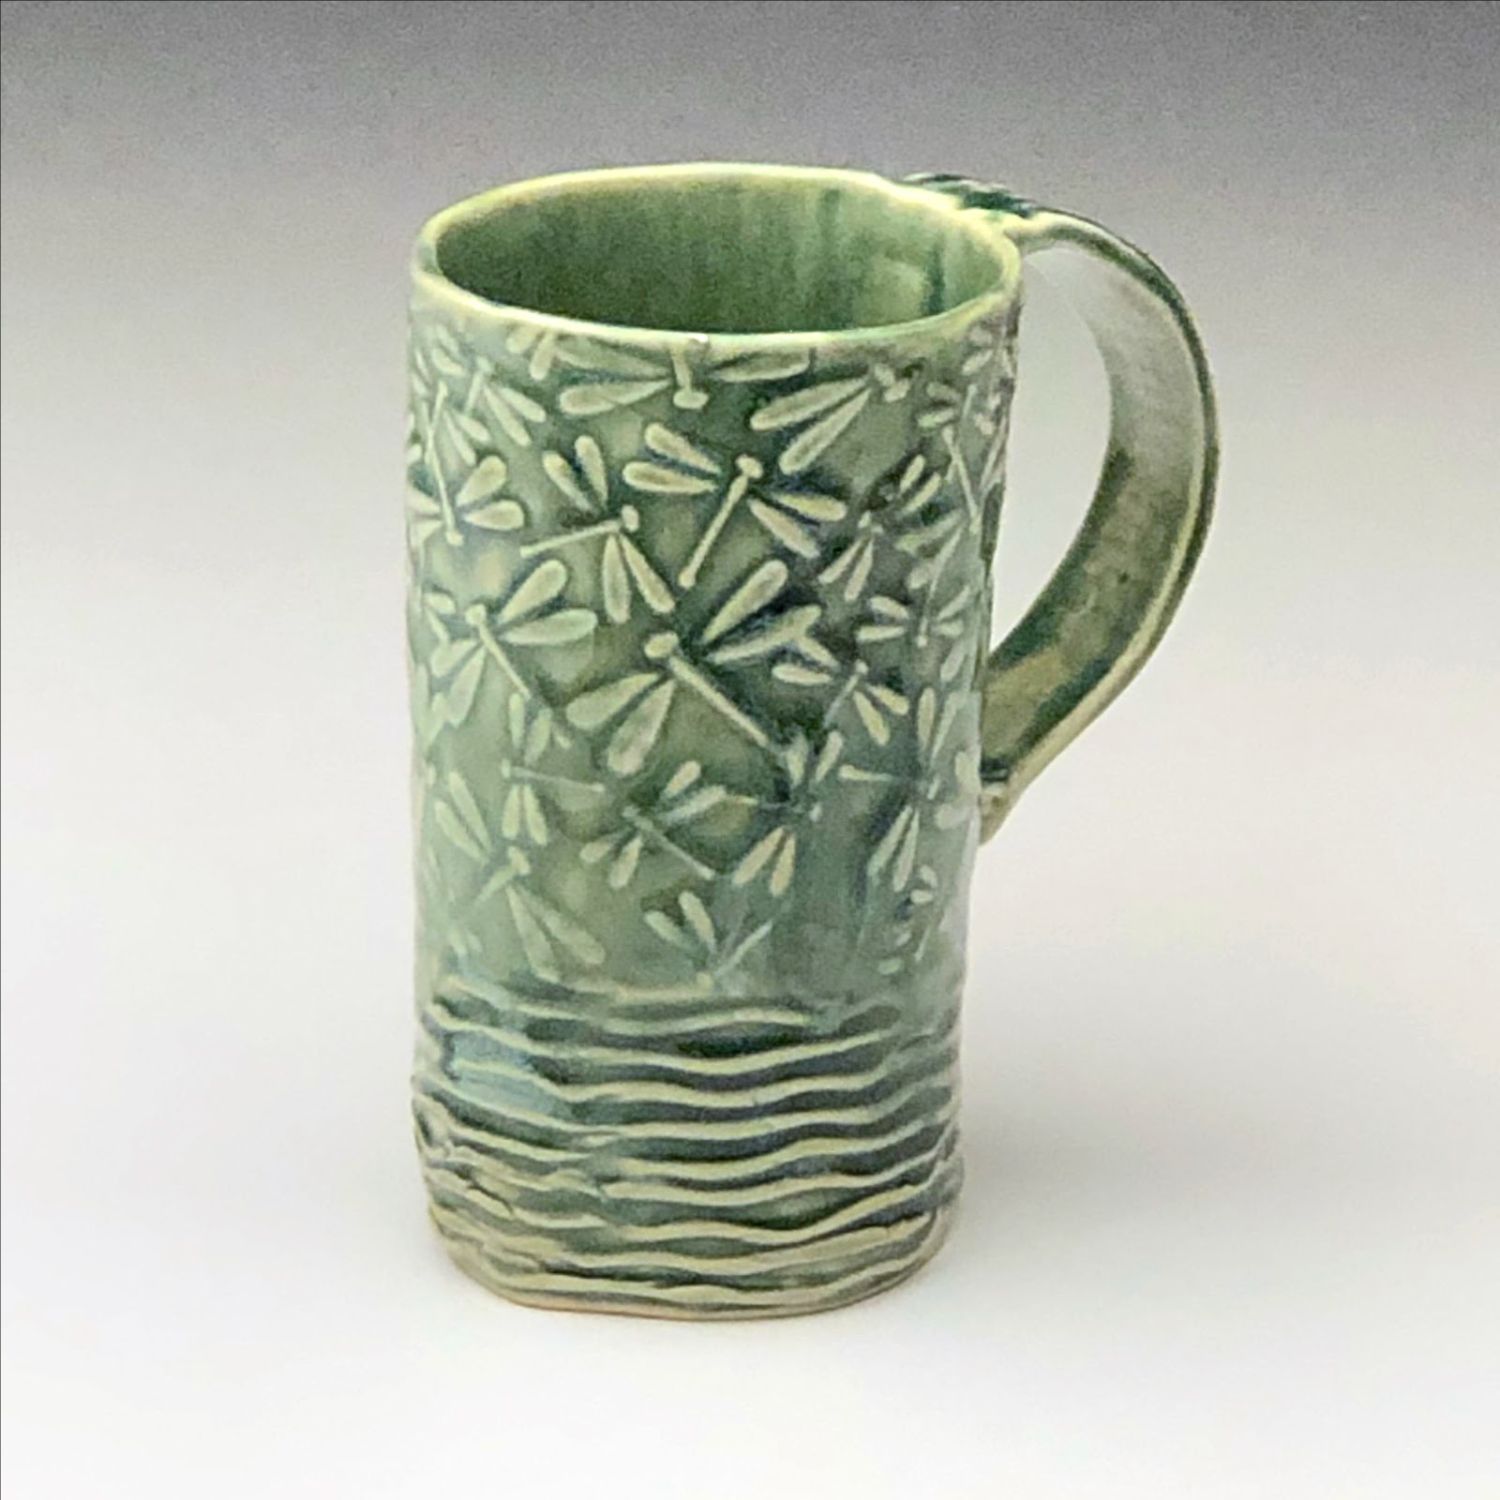 Audrey Mah: Green Dragonfly Mug Product Image 1 of 3